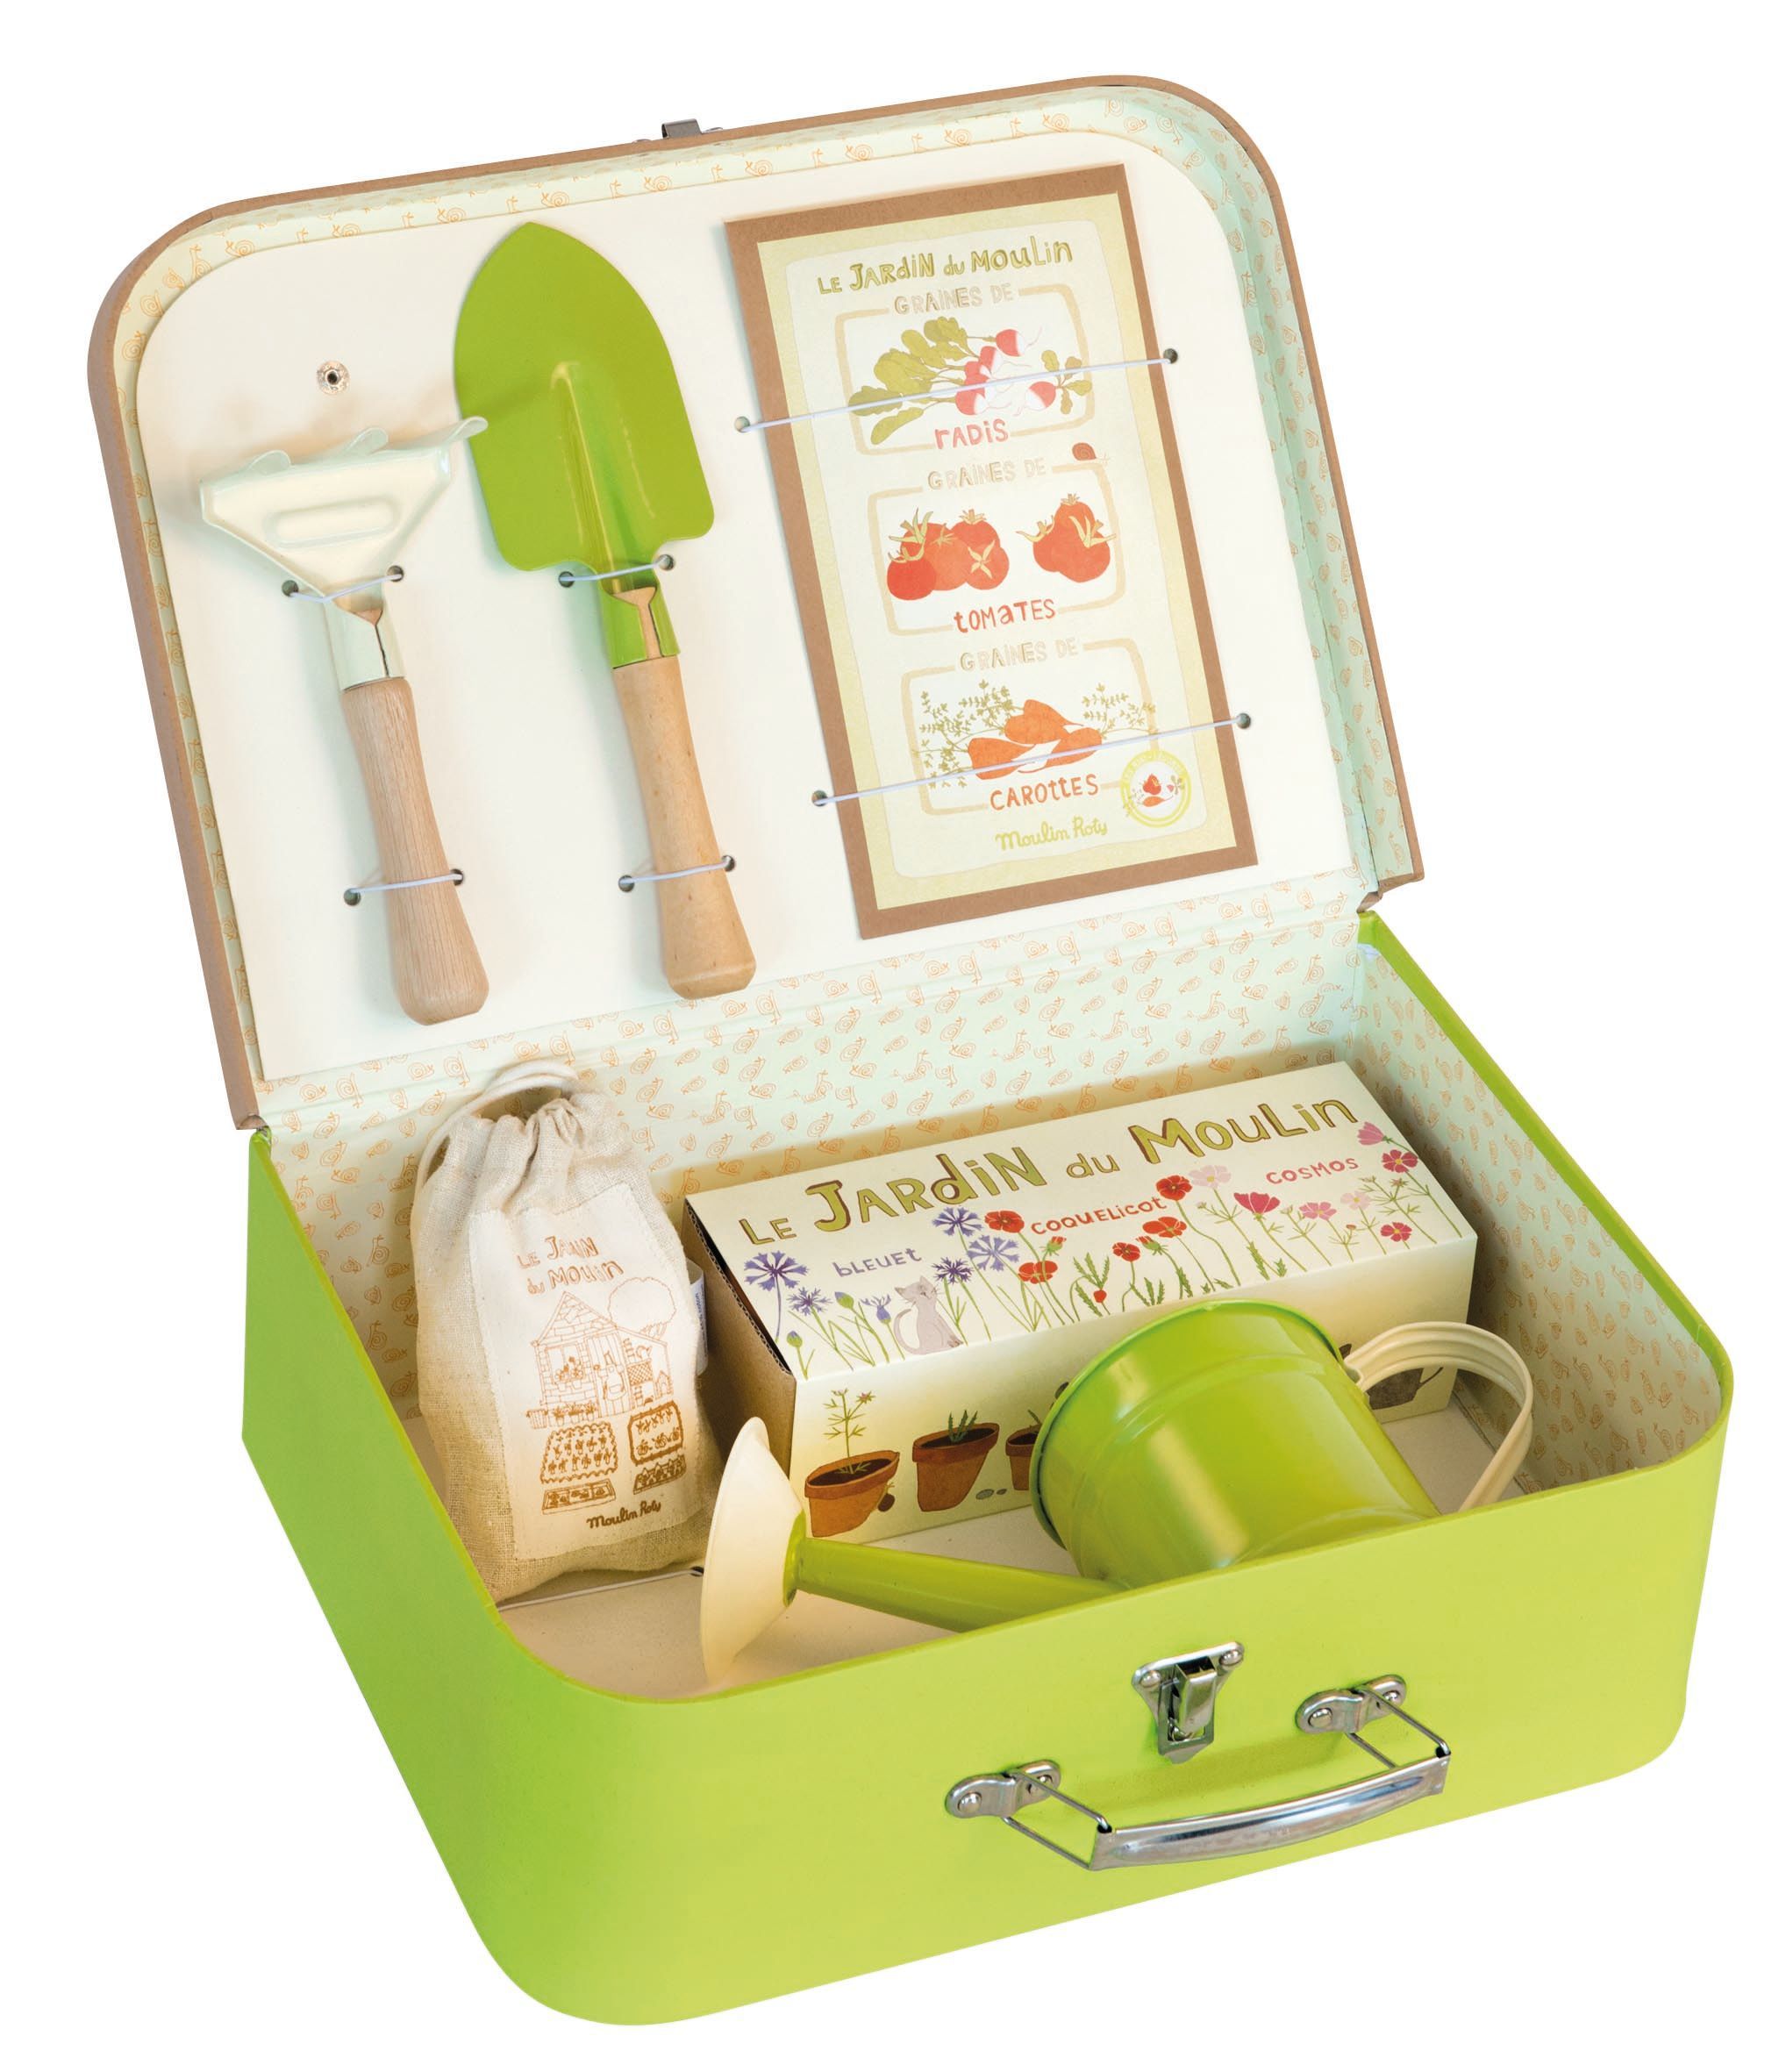 kit de jardinage pour enfant